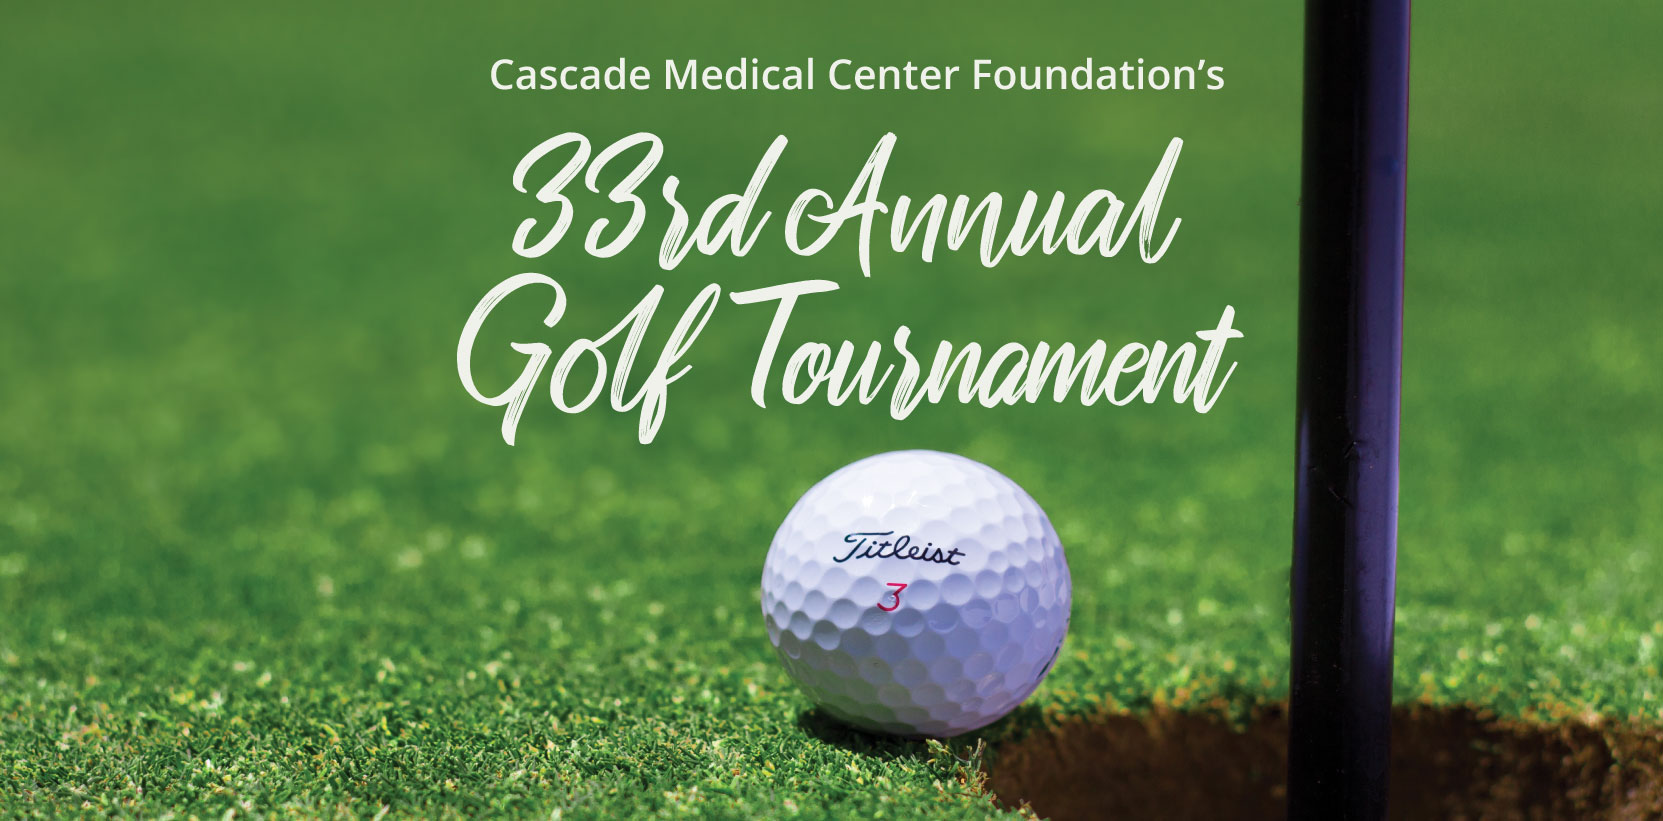 33rd Annual Golf Tournament